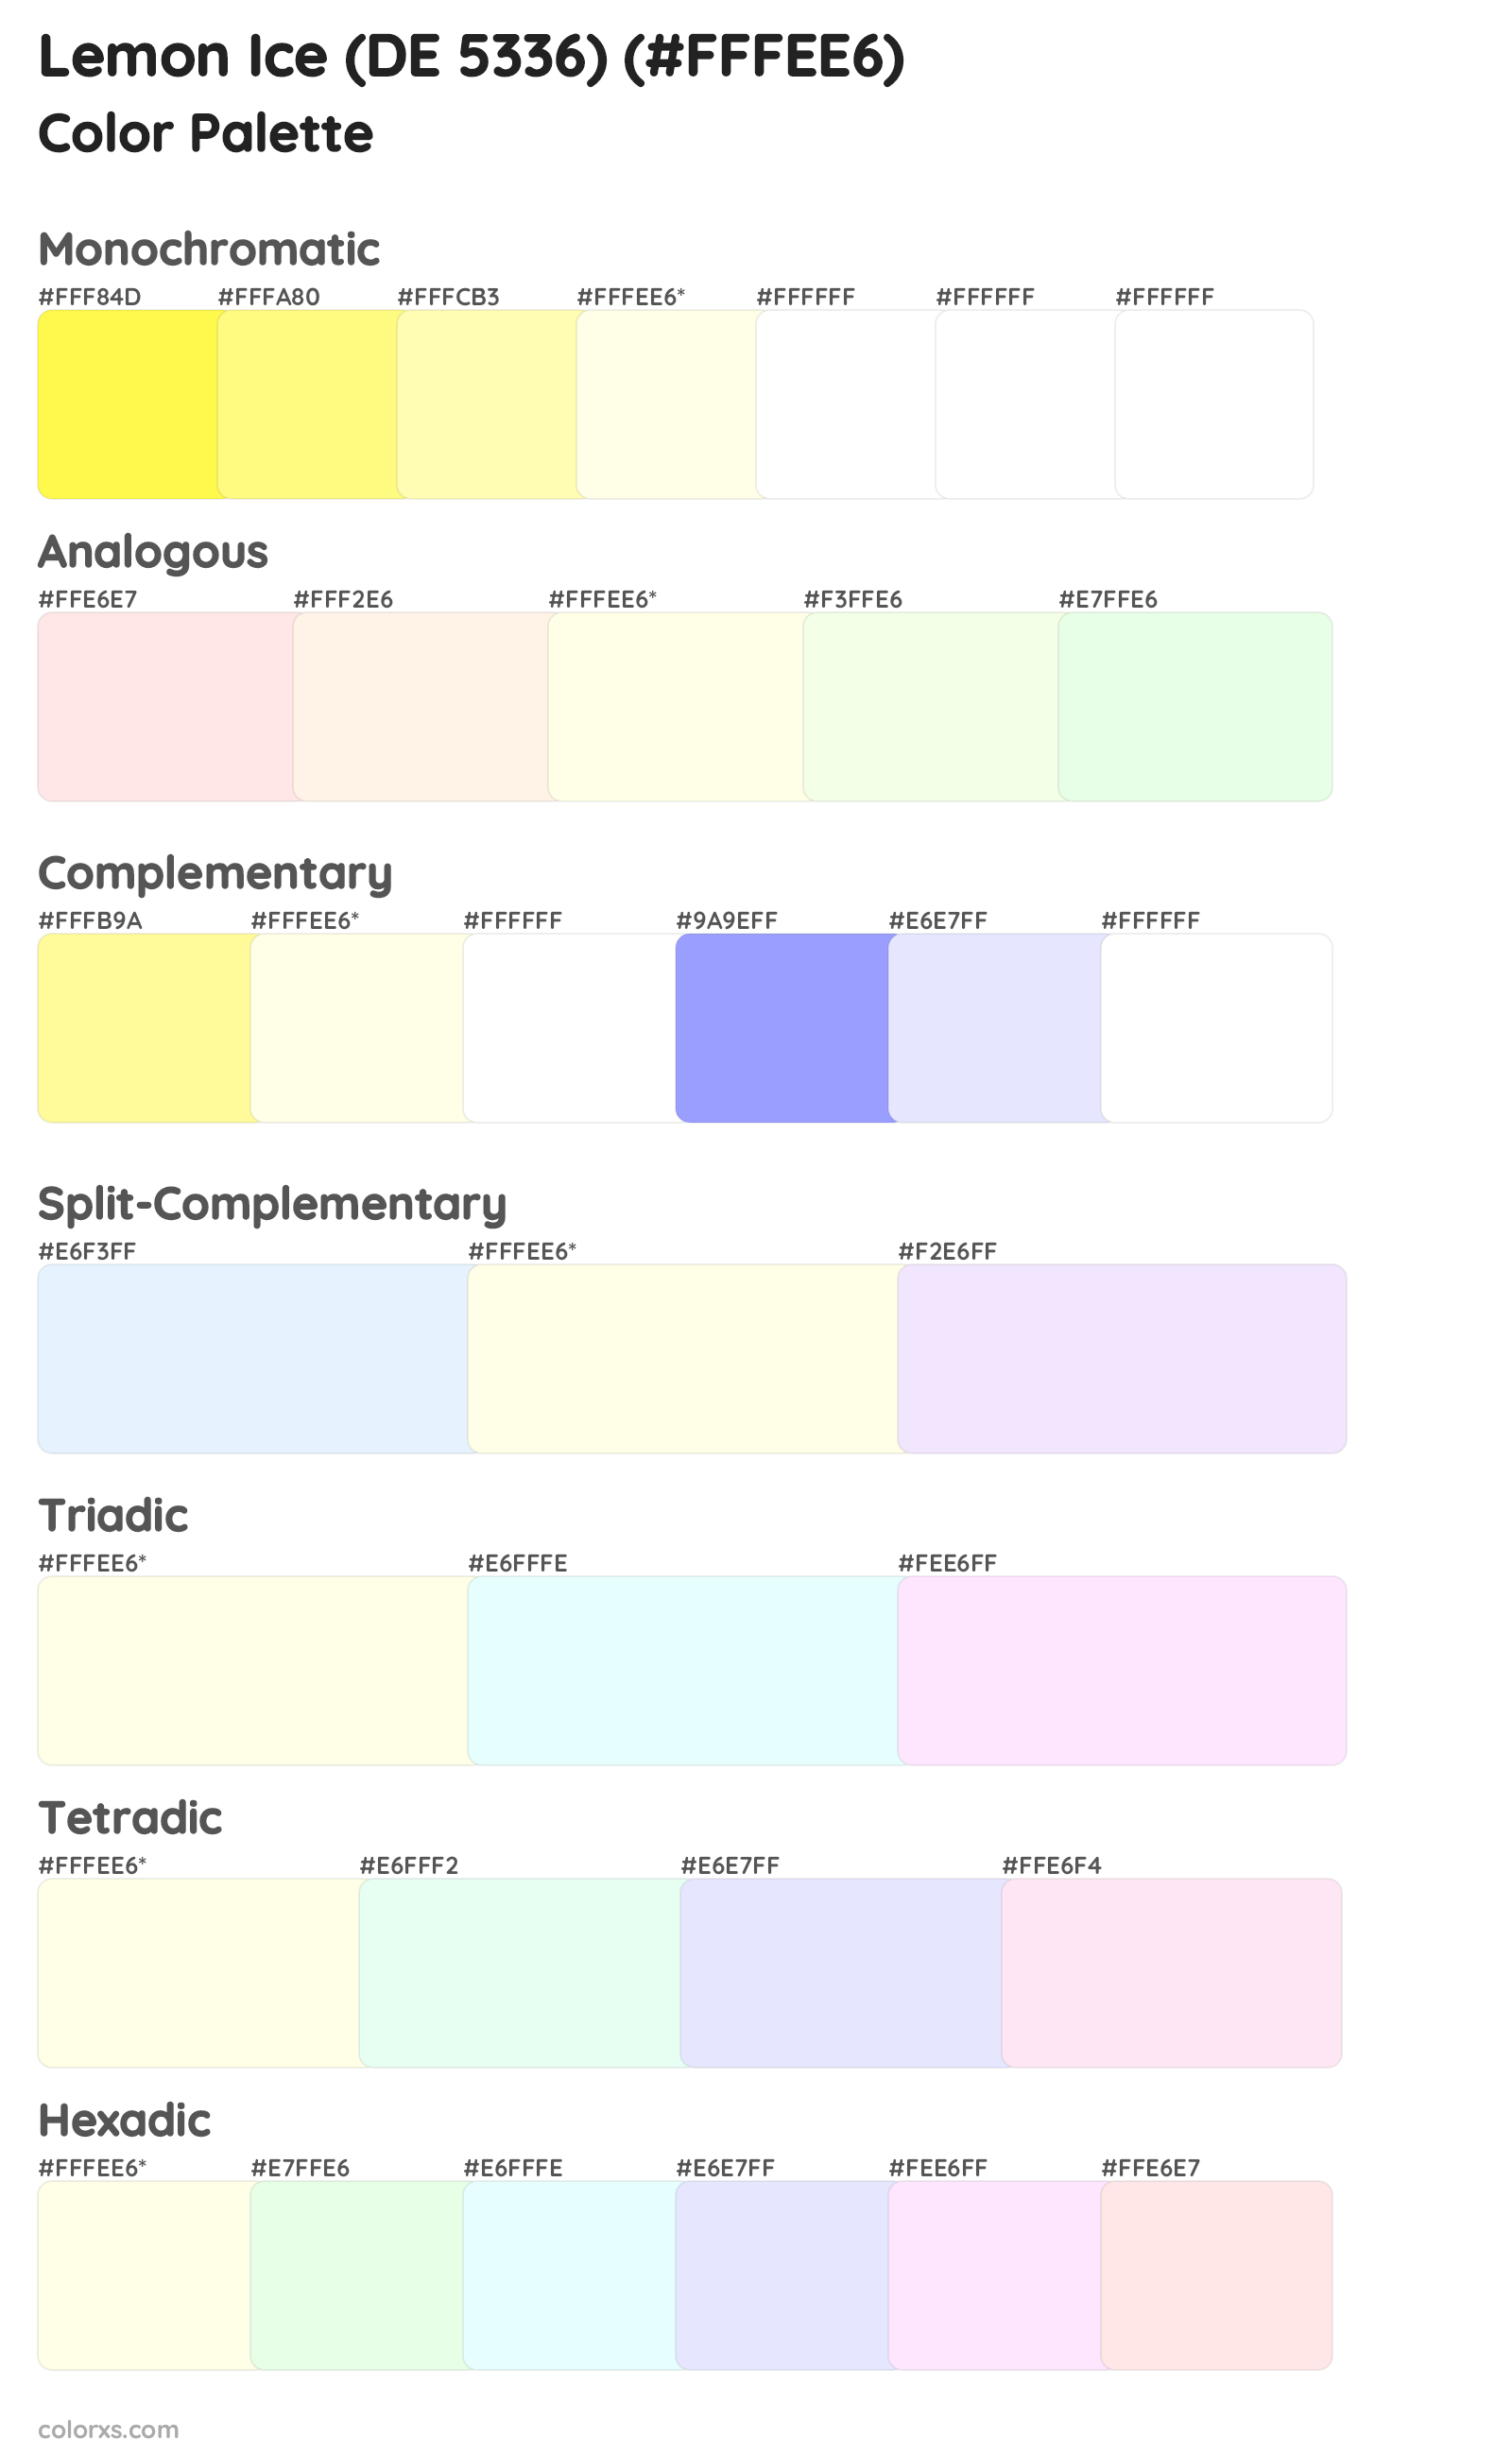 Lemon Ice (DE 5336) Color Scheme Palettes